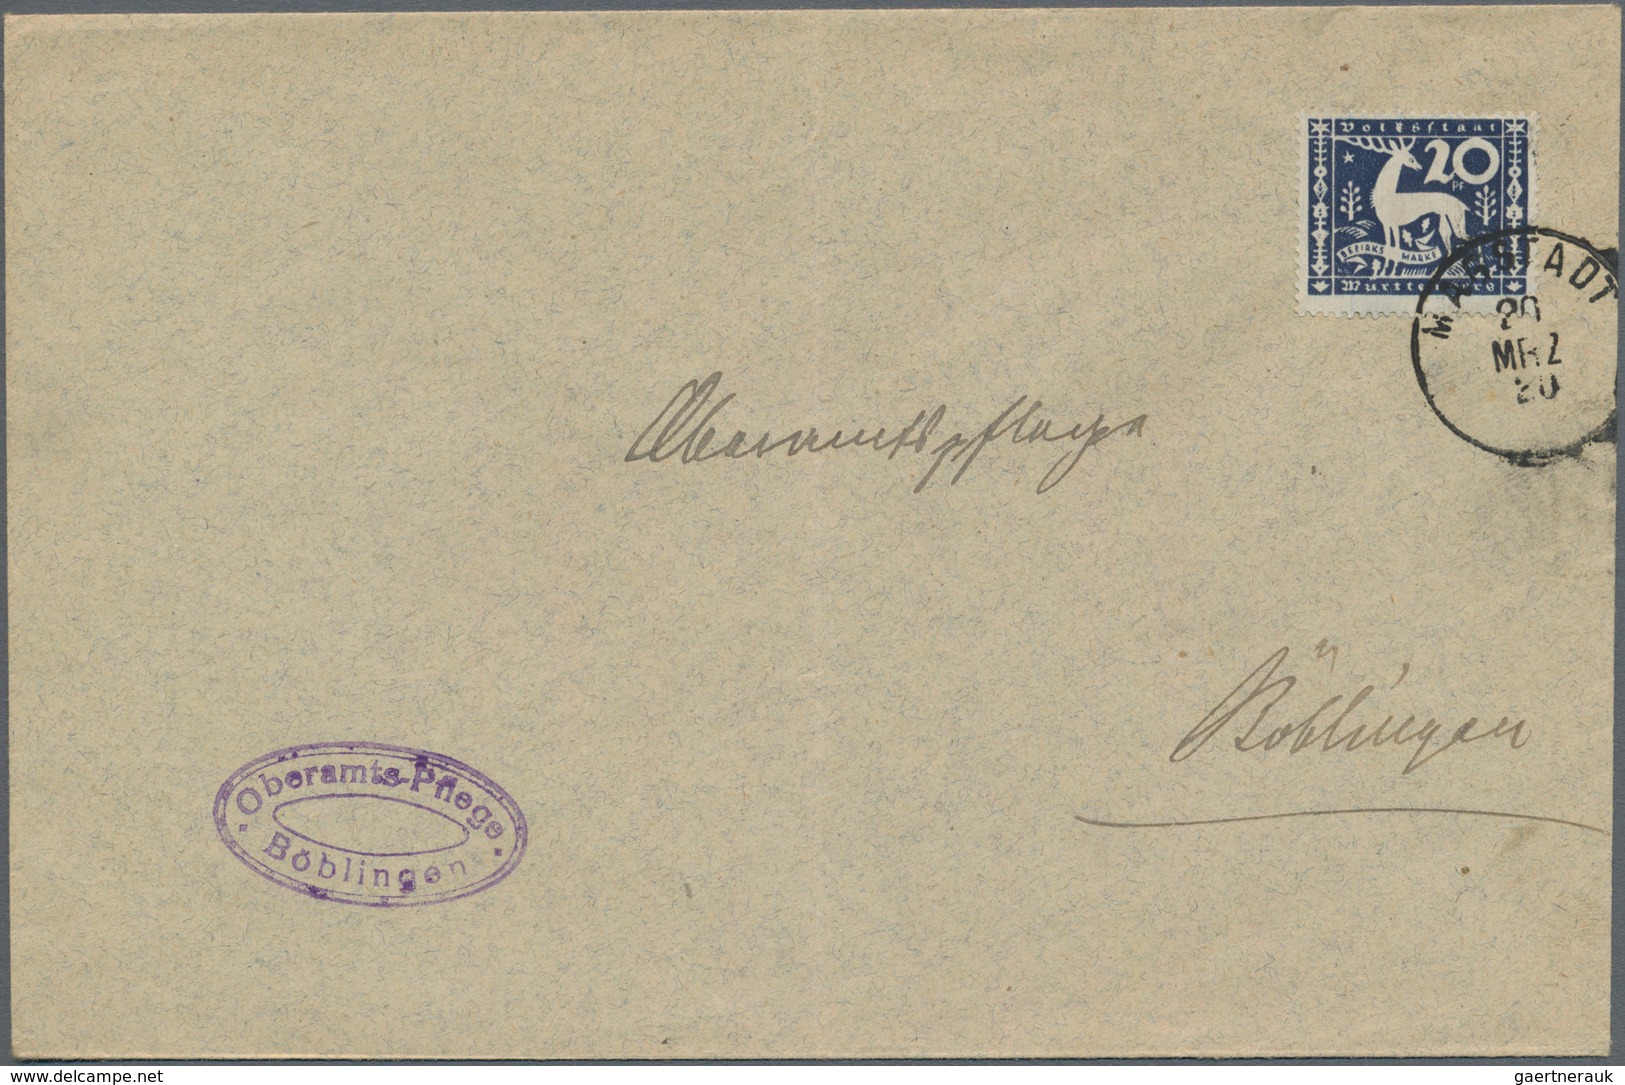 Württemberg - Marken und Briefe: 1850/1920, vielseitige Partie von ca. 120 Briefen, Karten und Ganzs